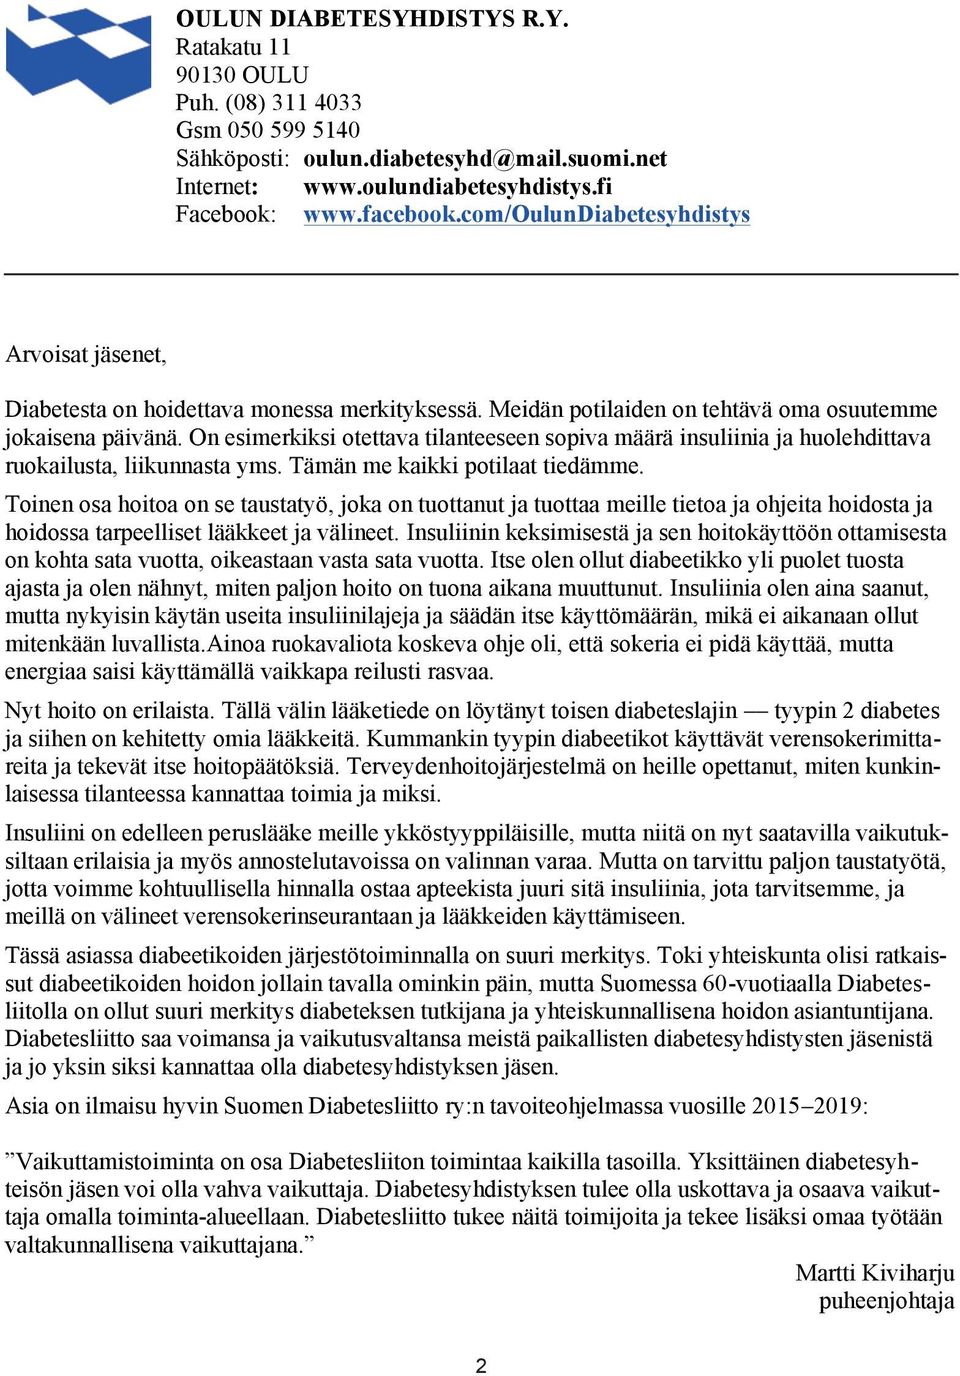 oulundiabetesyhdistys.fi Facebook: www.facebook.com/oulundiabetesyhdistys Diabetesta on hoidettava monessa merkityksessä.